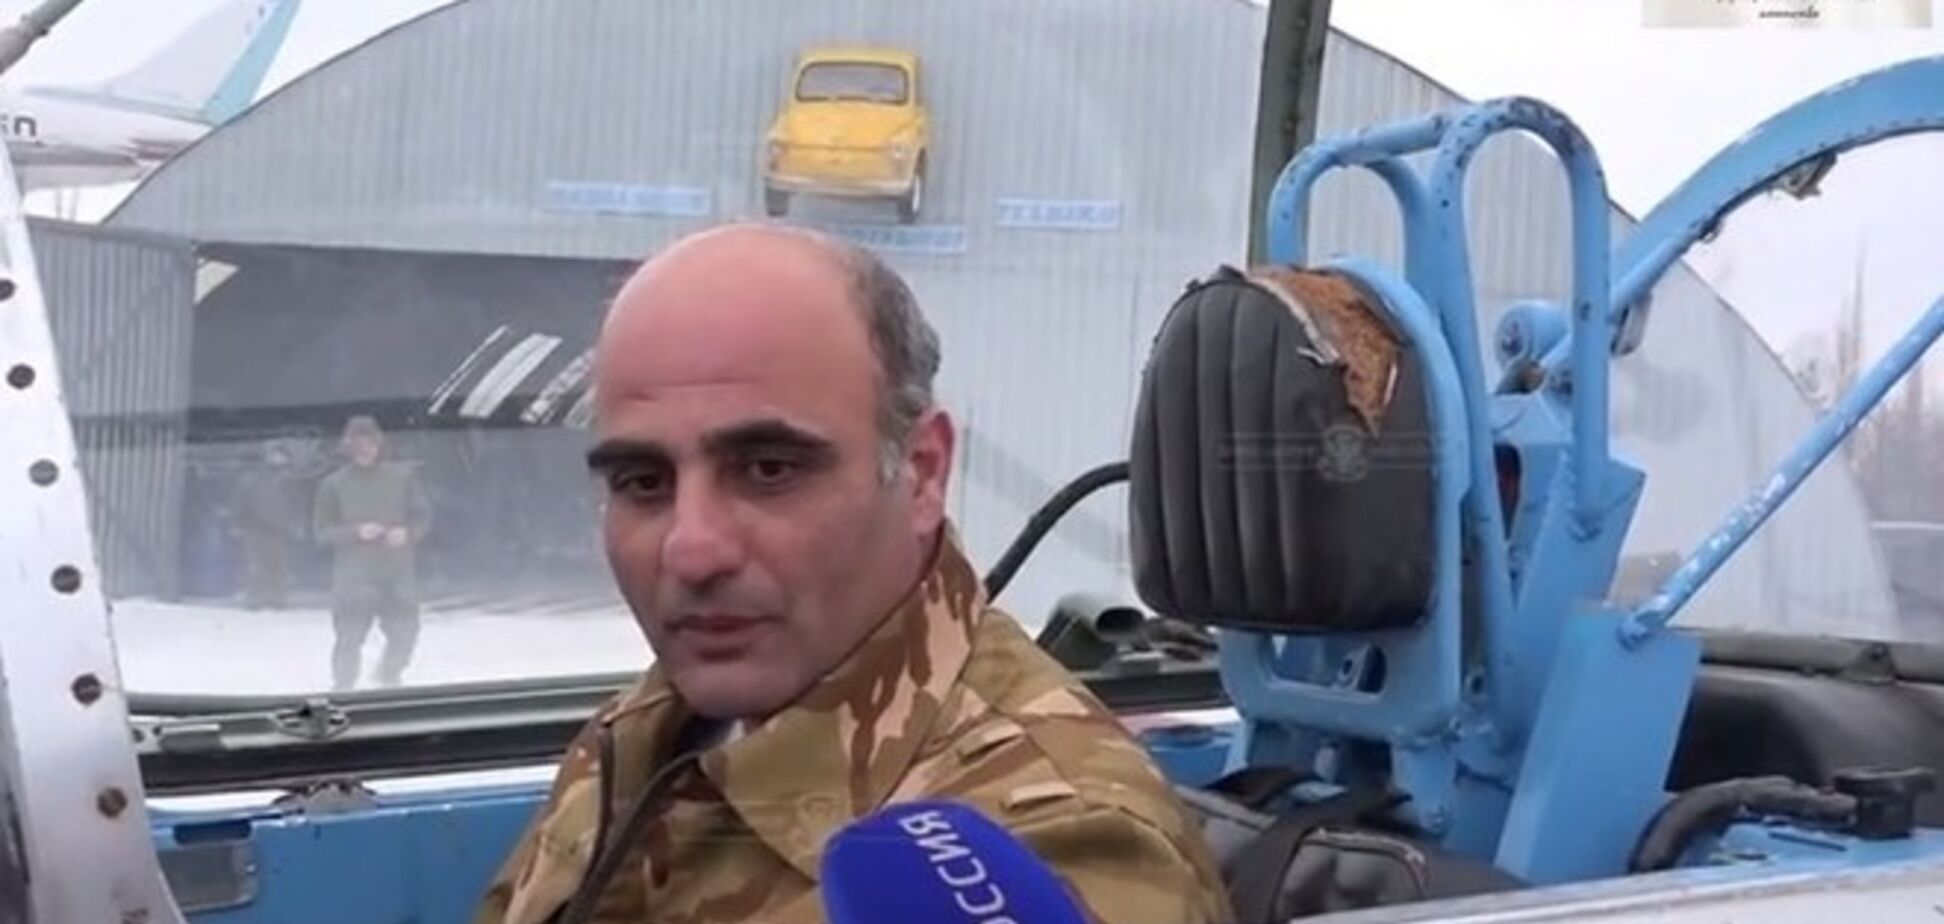 Боевики 'ЛНР' похвастали 'нелетающим корытом', назвав его авиацией: опубликовано видео